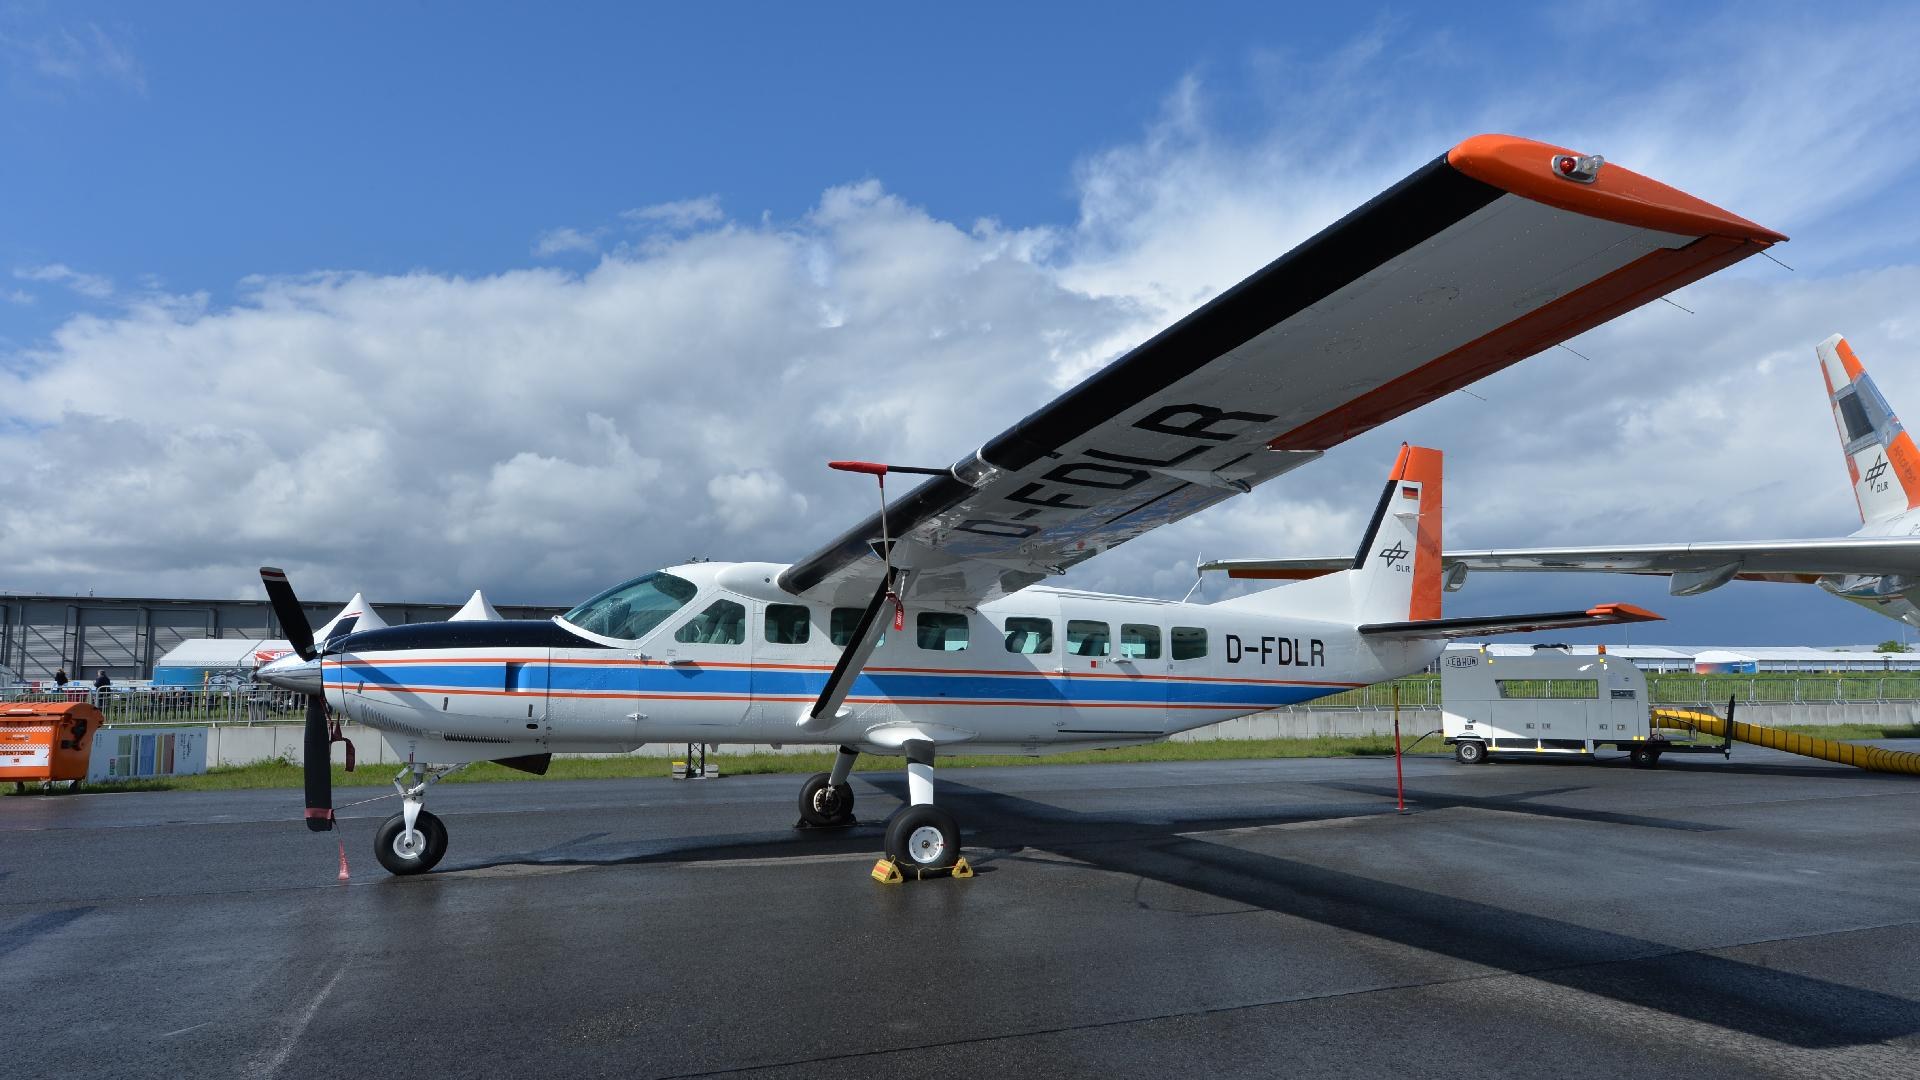 DLR-Forschungsflugzeug Cessna 208